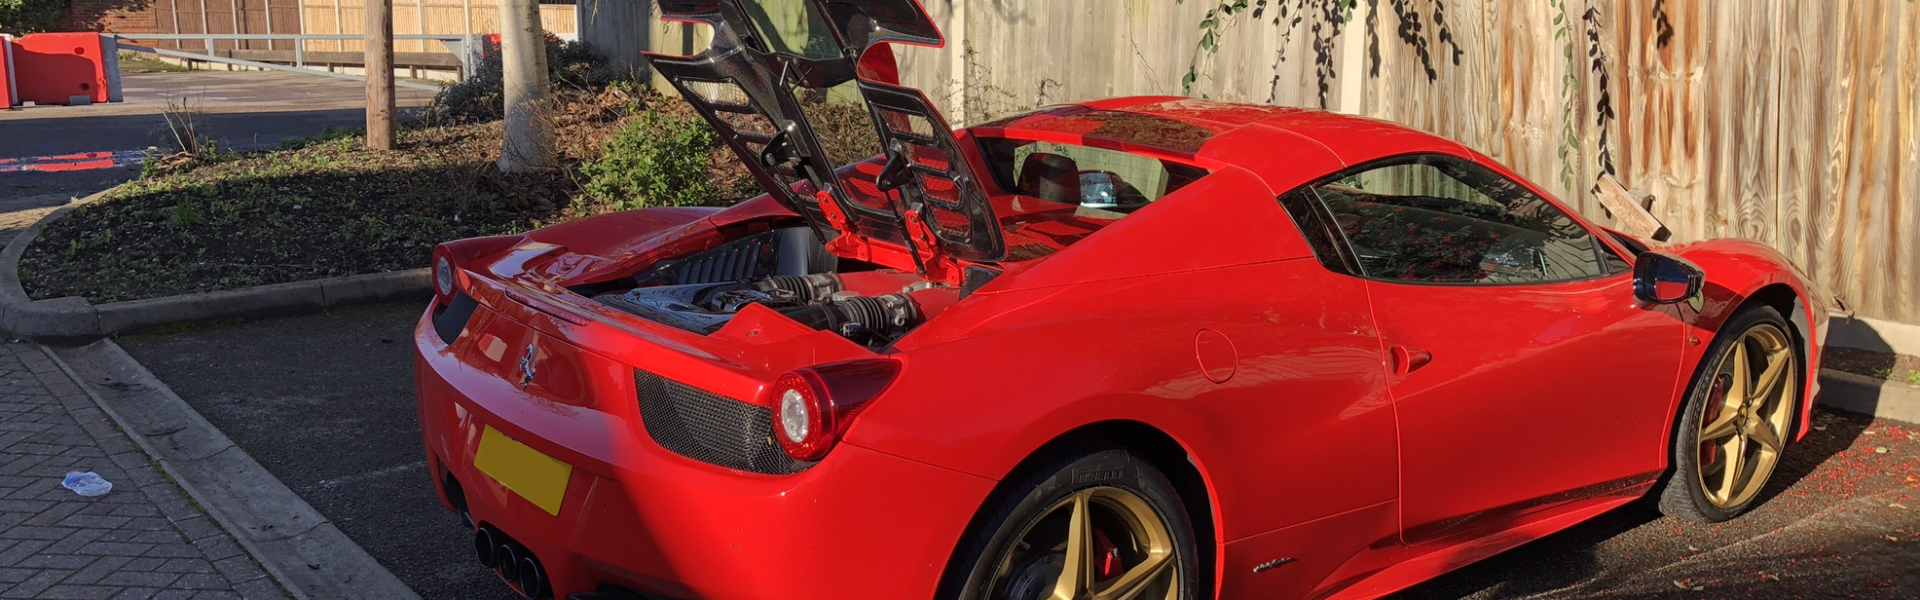 Ferrari 458 Spider Upgrades; Capristo Carbon Fibre Glass Engine Cover & Engine Bay Carbon